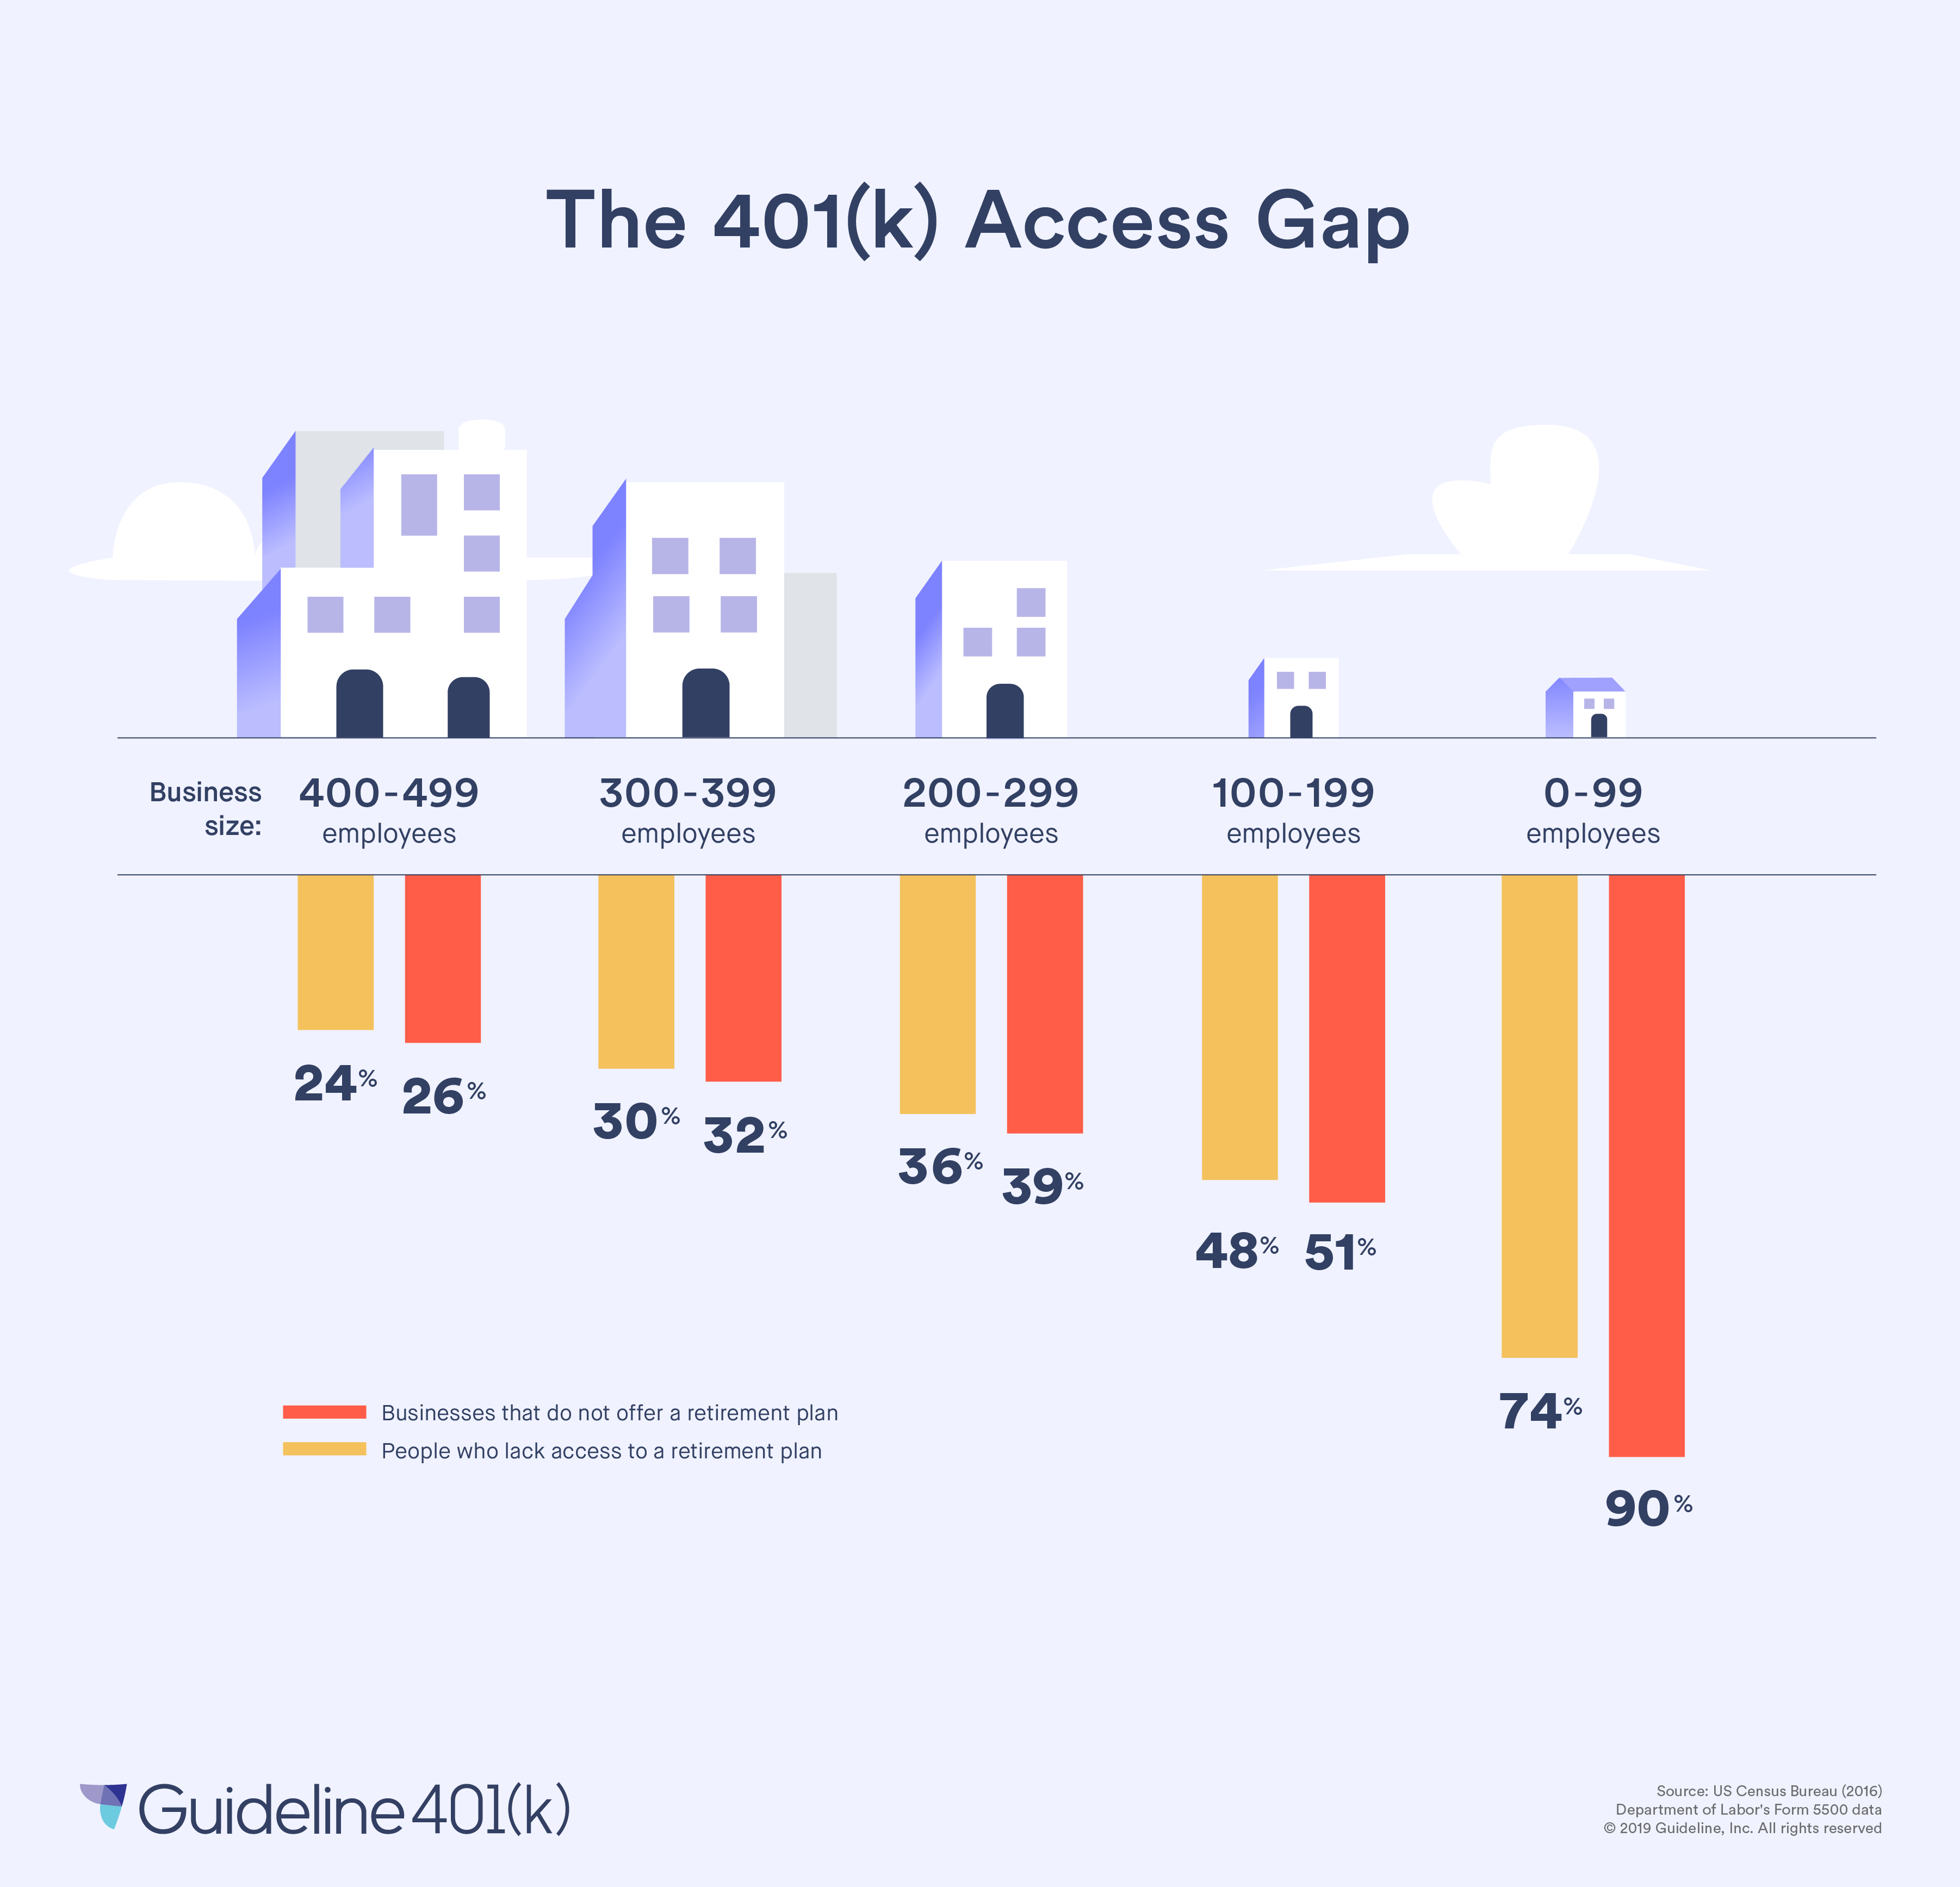 The 401(k) access gap